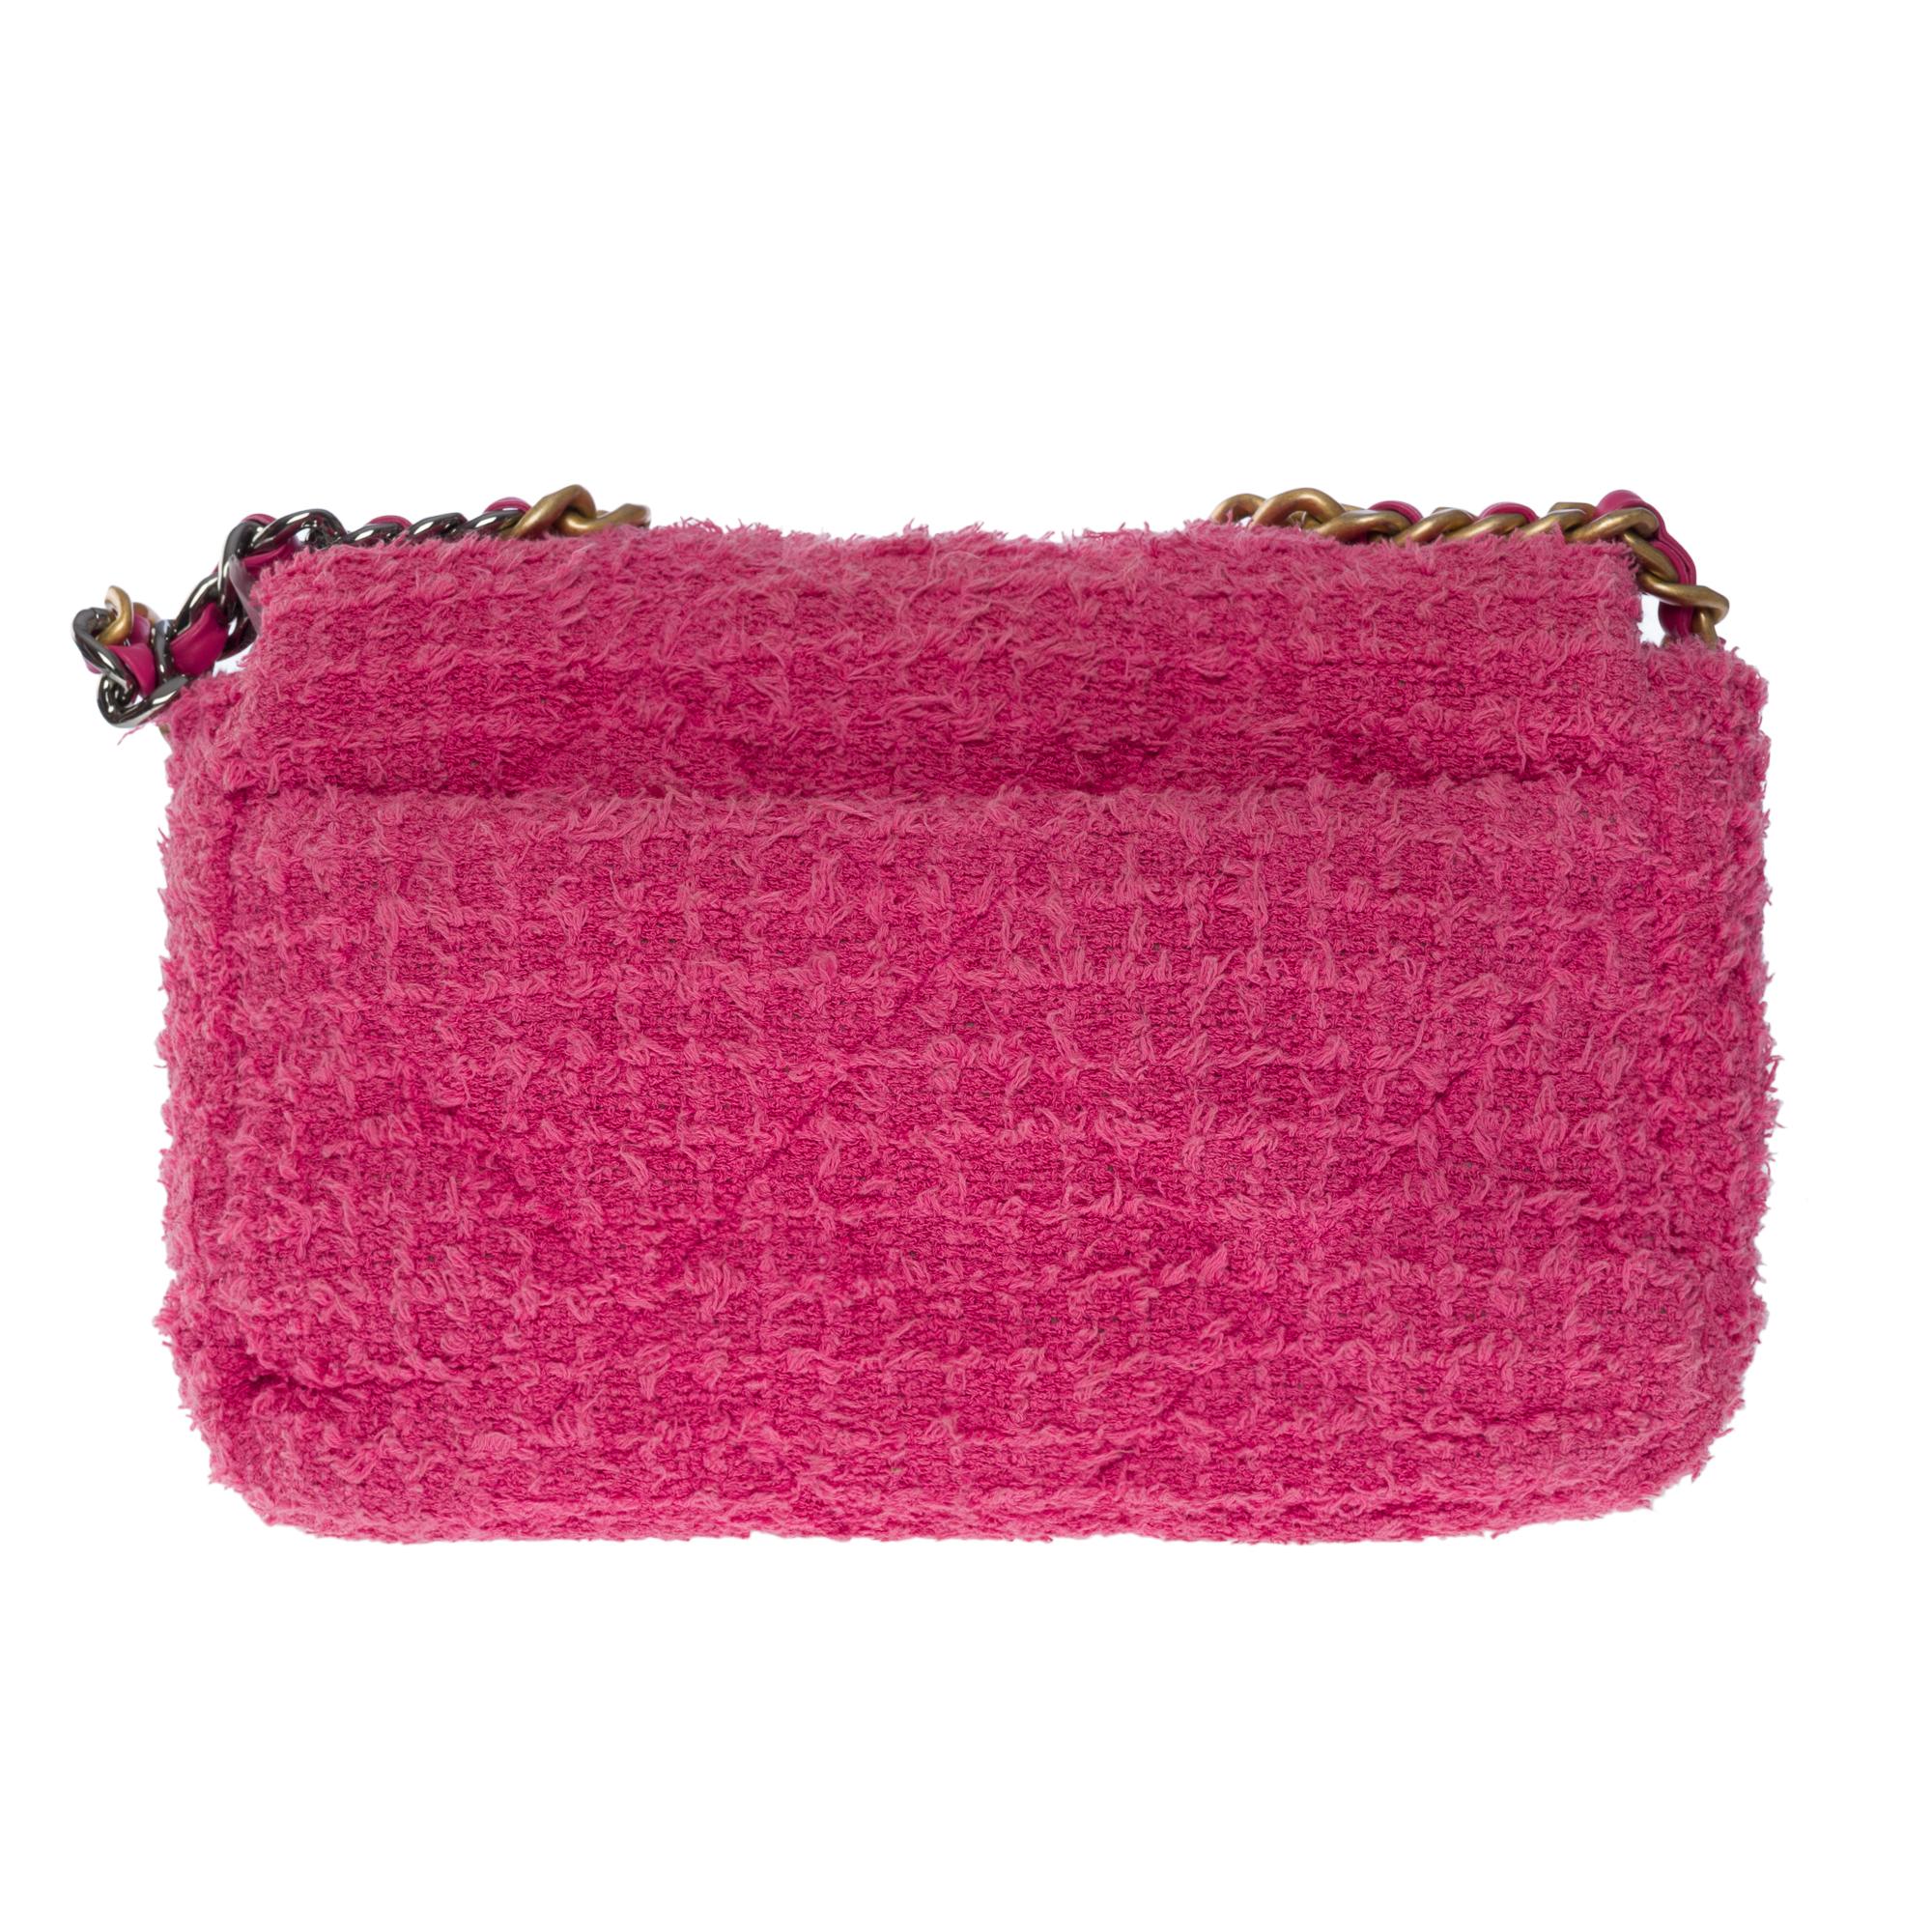 L'incontournable sac à bandoulière Chanel 19 en tweed de coton rose, quincaillerie en métal doré et argenté, poignée en métal doré, une simple poignée en métal doré mat et argenté brillant entrelacée de cuir rose pour un portage à la main ou à